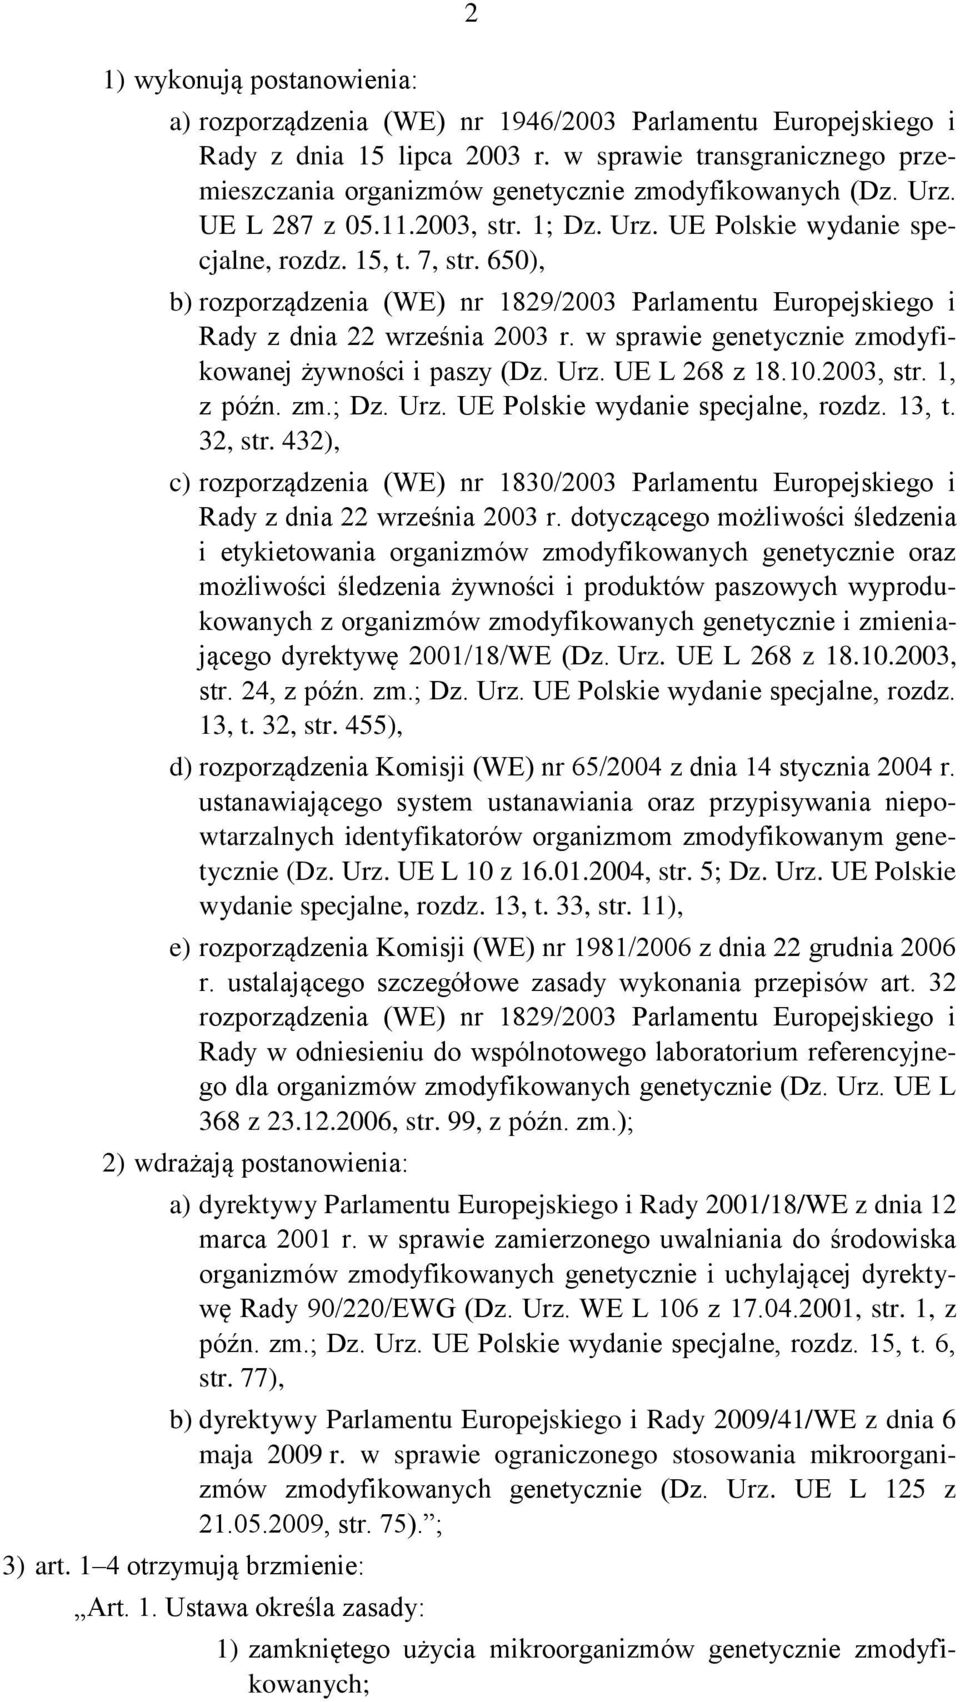 650), b) rozporządzenia (WE) nr 1829/2003 Parlamentu Europejskiego i Rady z dnia 22 września 2003 r. w sprawie genetycznie zmodyfikowanej żywności i paszy (Dz. Urz. UE L 268 z 18.10.2003, str.